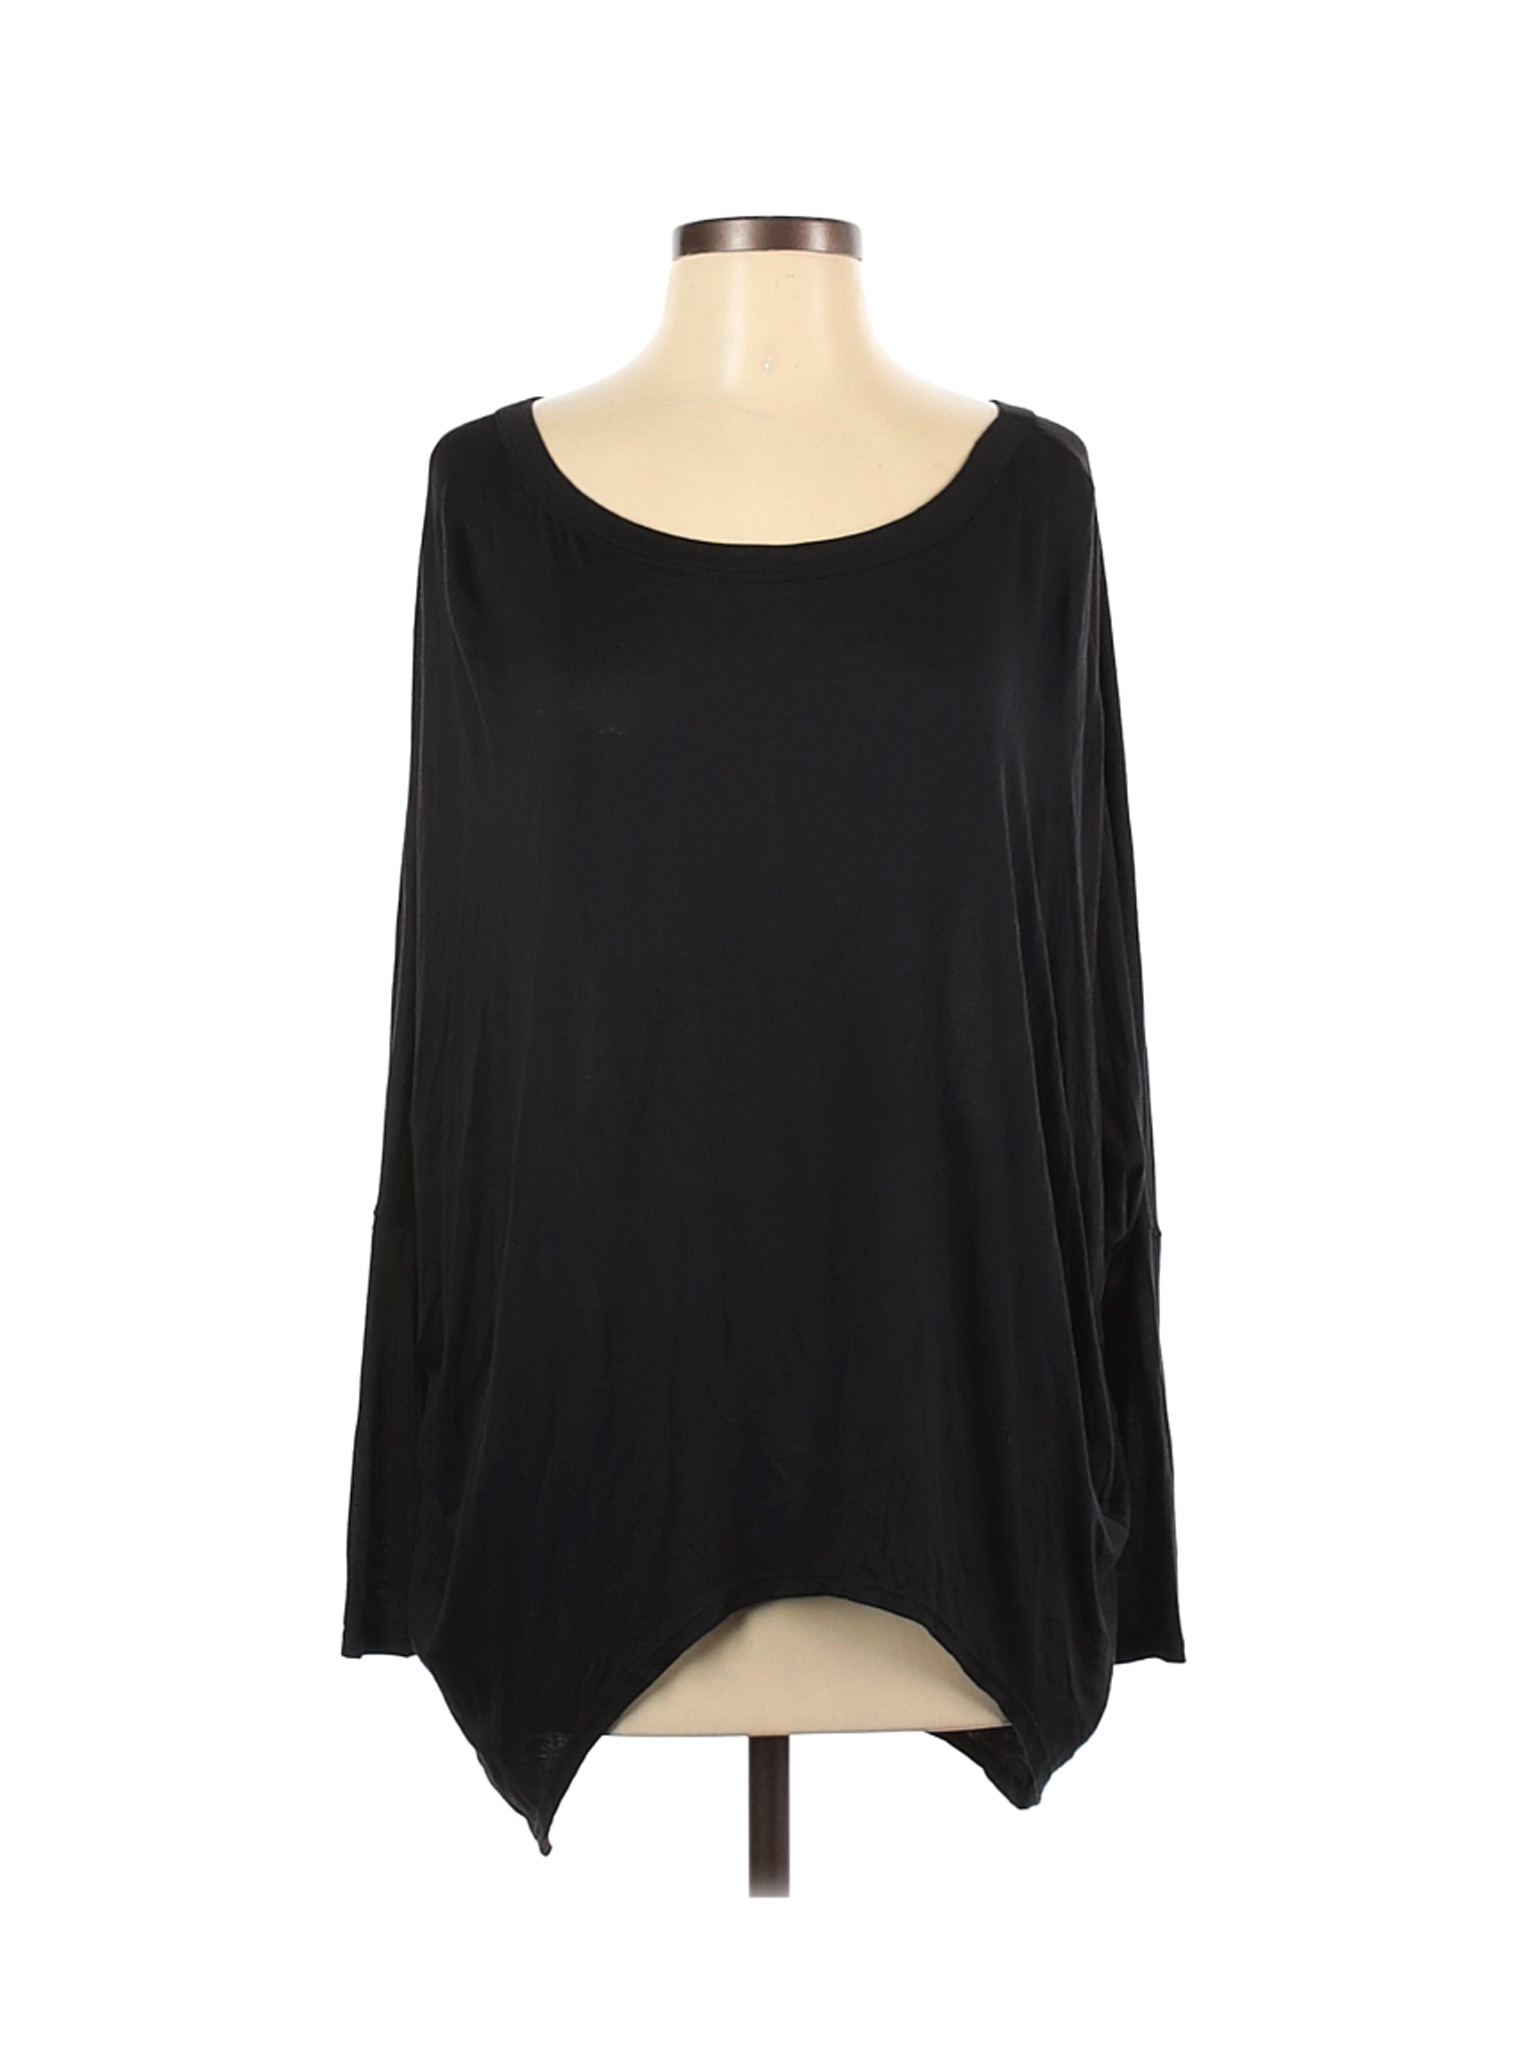 Wasabi + mint Women Black Long Sleeve Top S | eBay